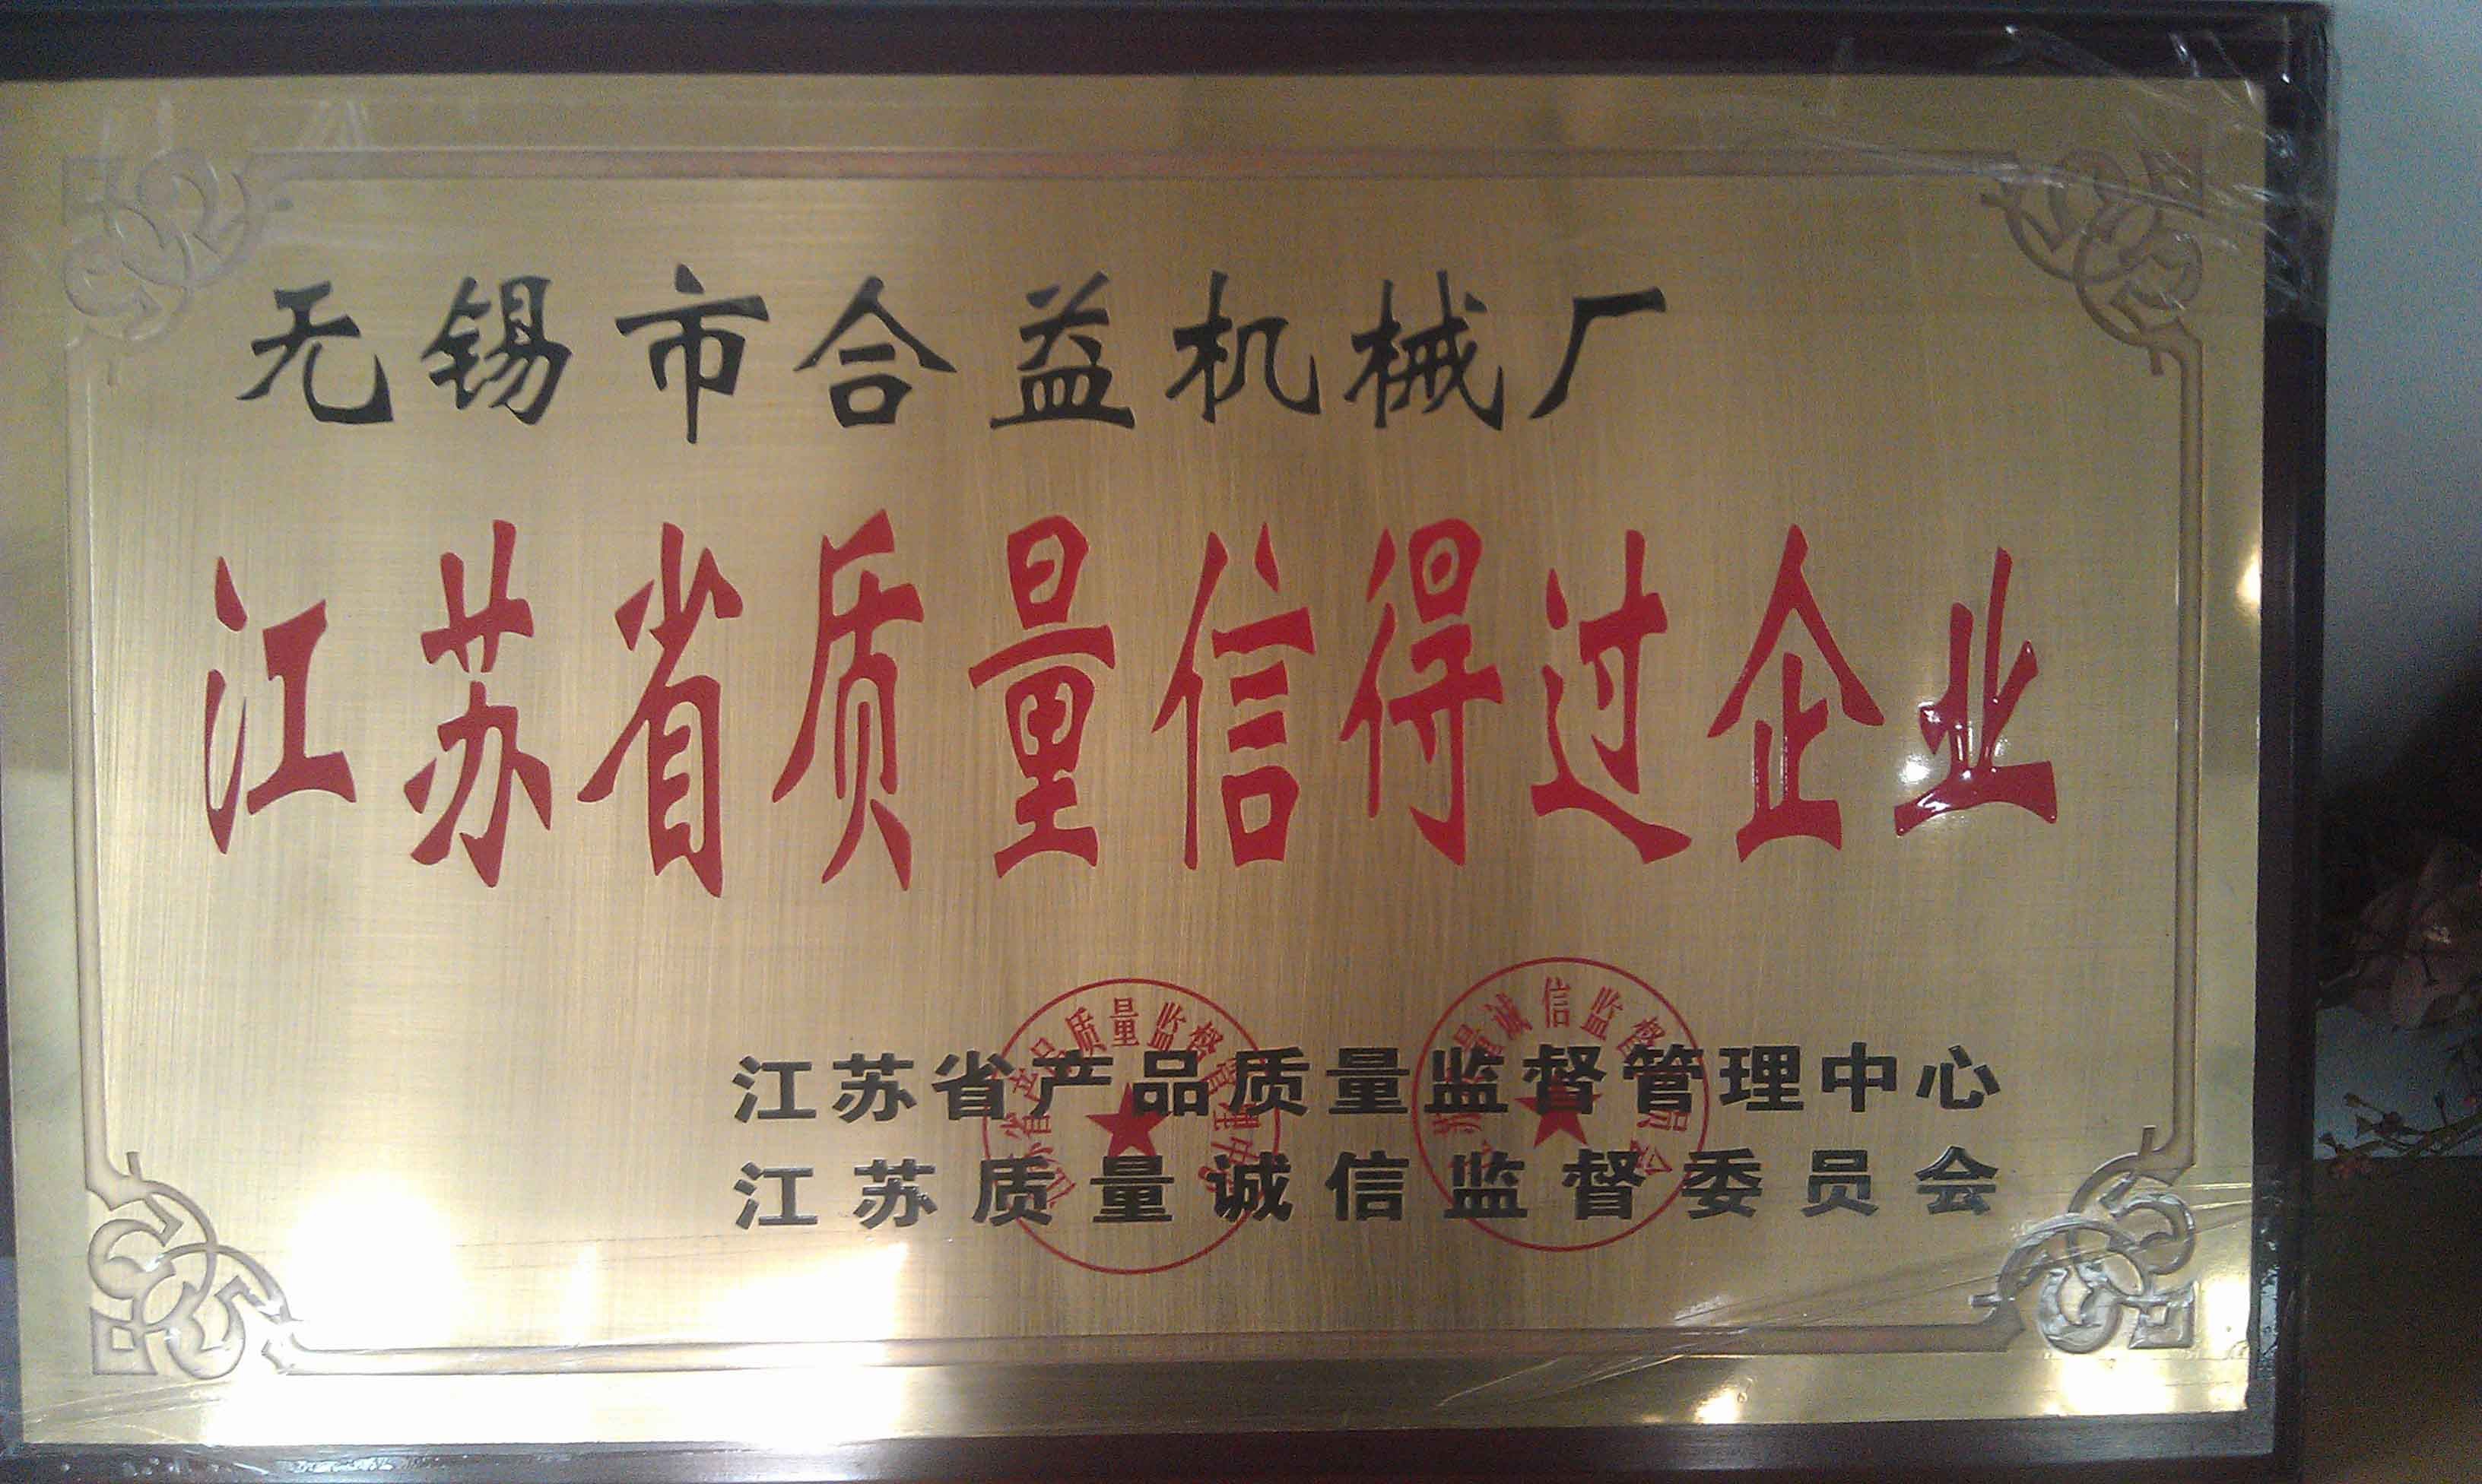 ประเทศจีน Jiangsu New Heyi Machinery Co., Ltd รับรอง